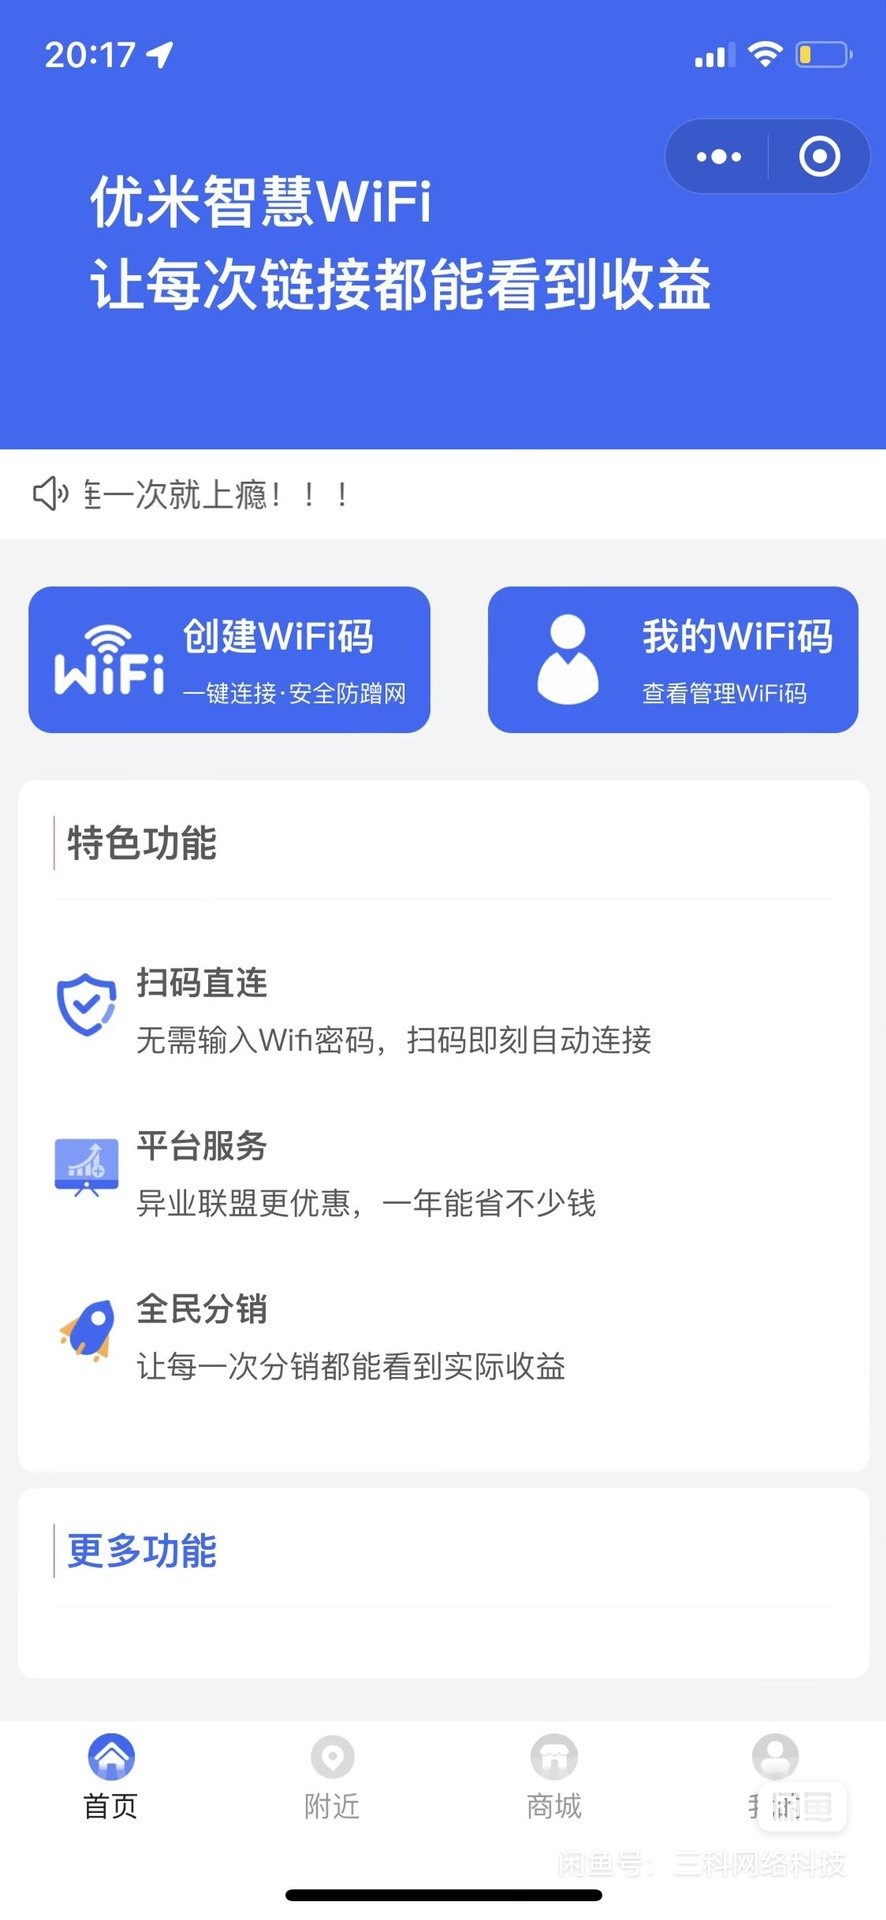 最新版WiFi大师专业版小程序带流量主独立版4.0.5【源码 + 搭建教程】